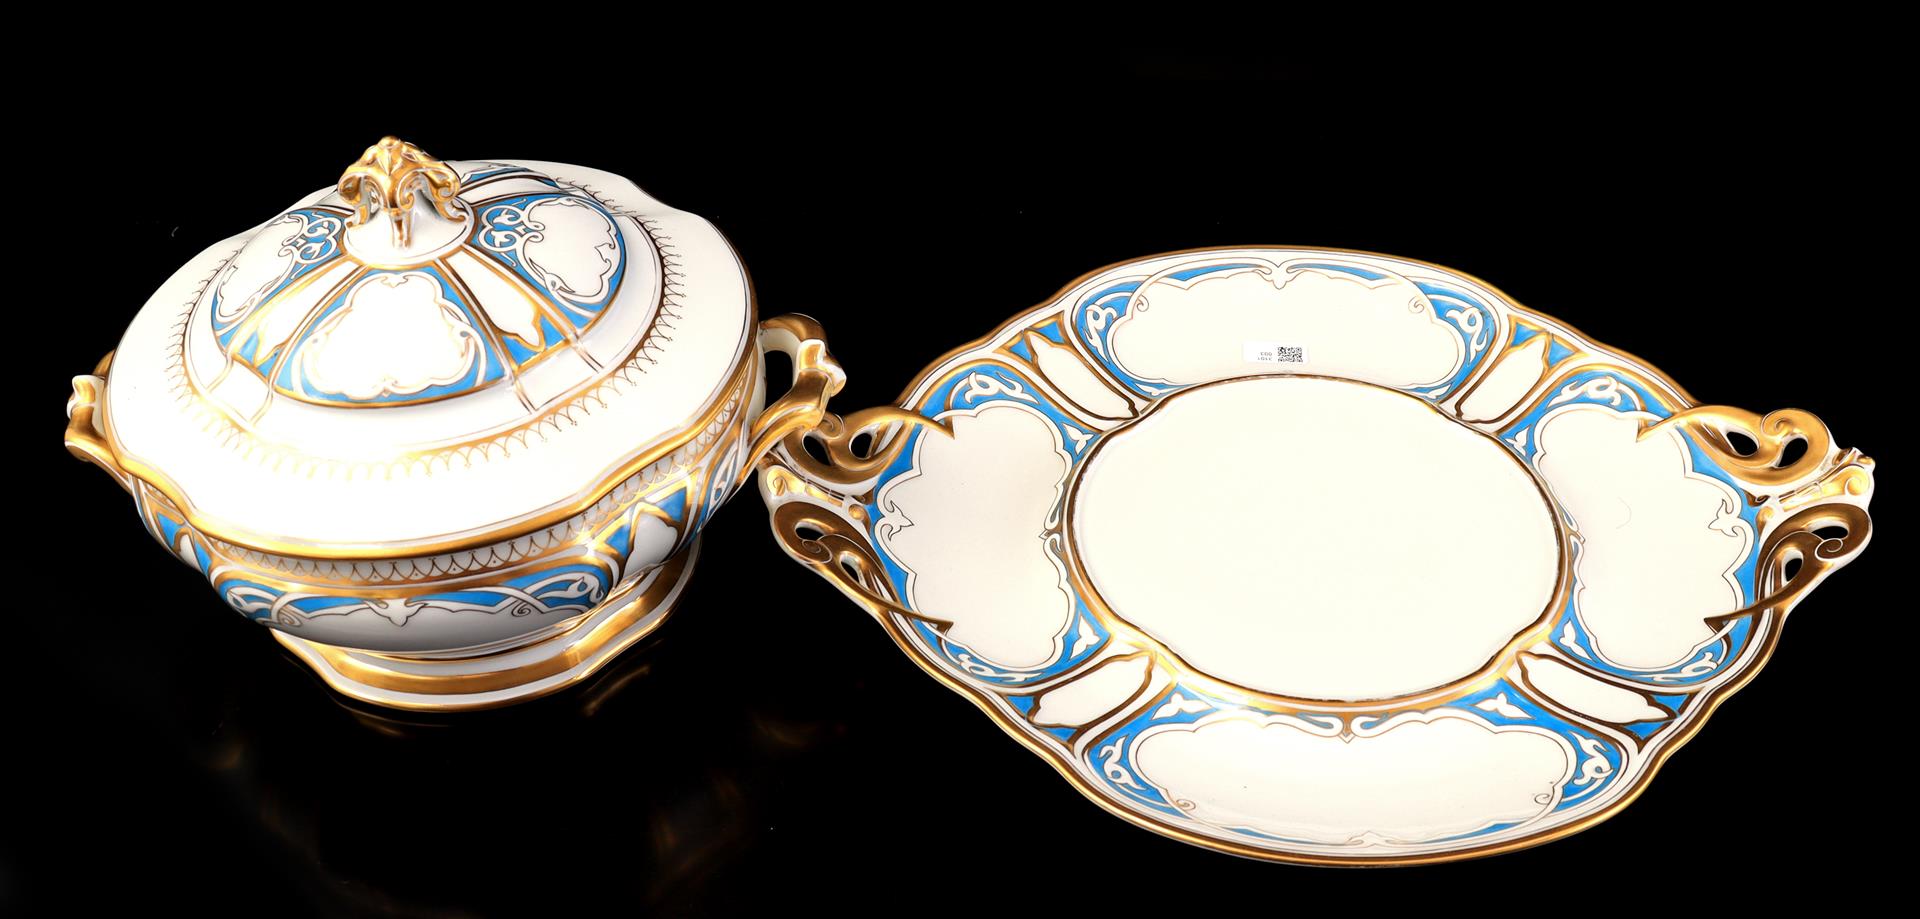 Haviland Limoges porcelain - Image 2 of 2